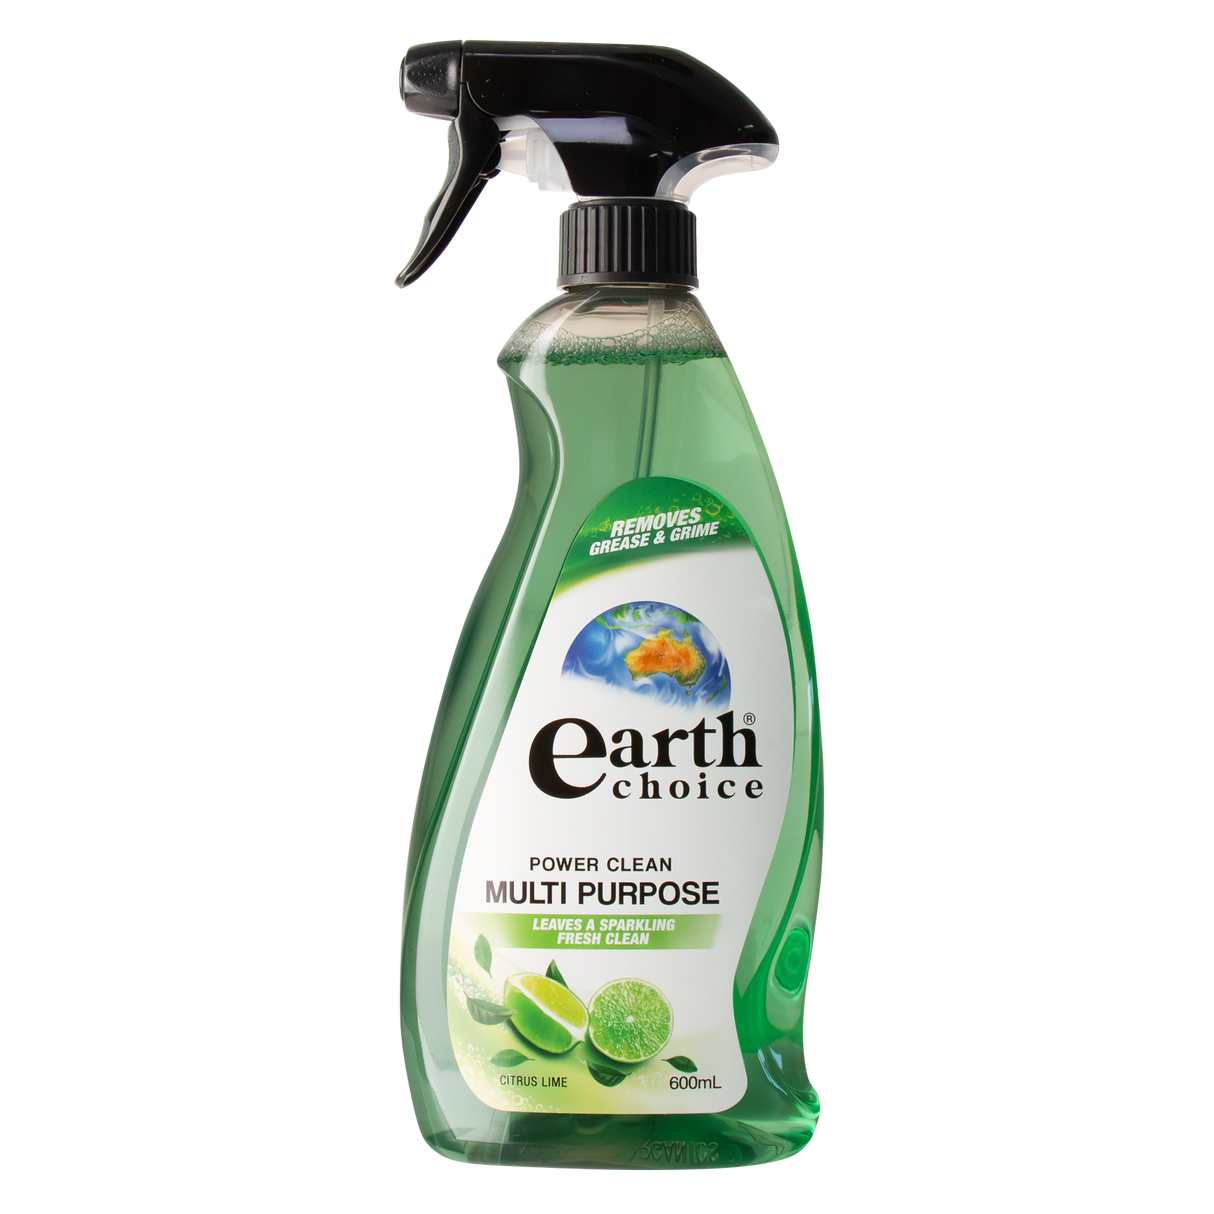 Earth Choice Multi Purpose Spray & Clean 600ml